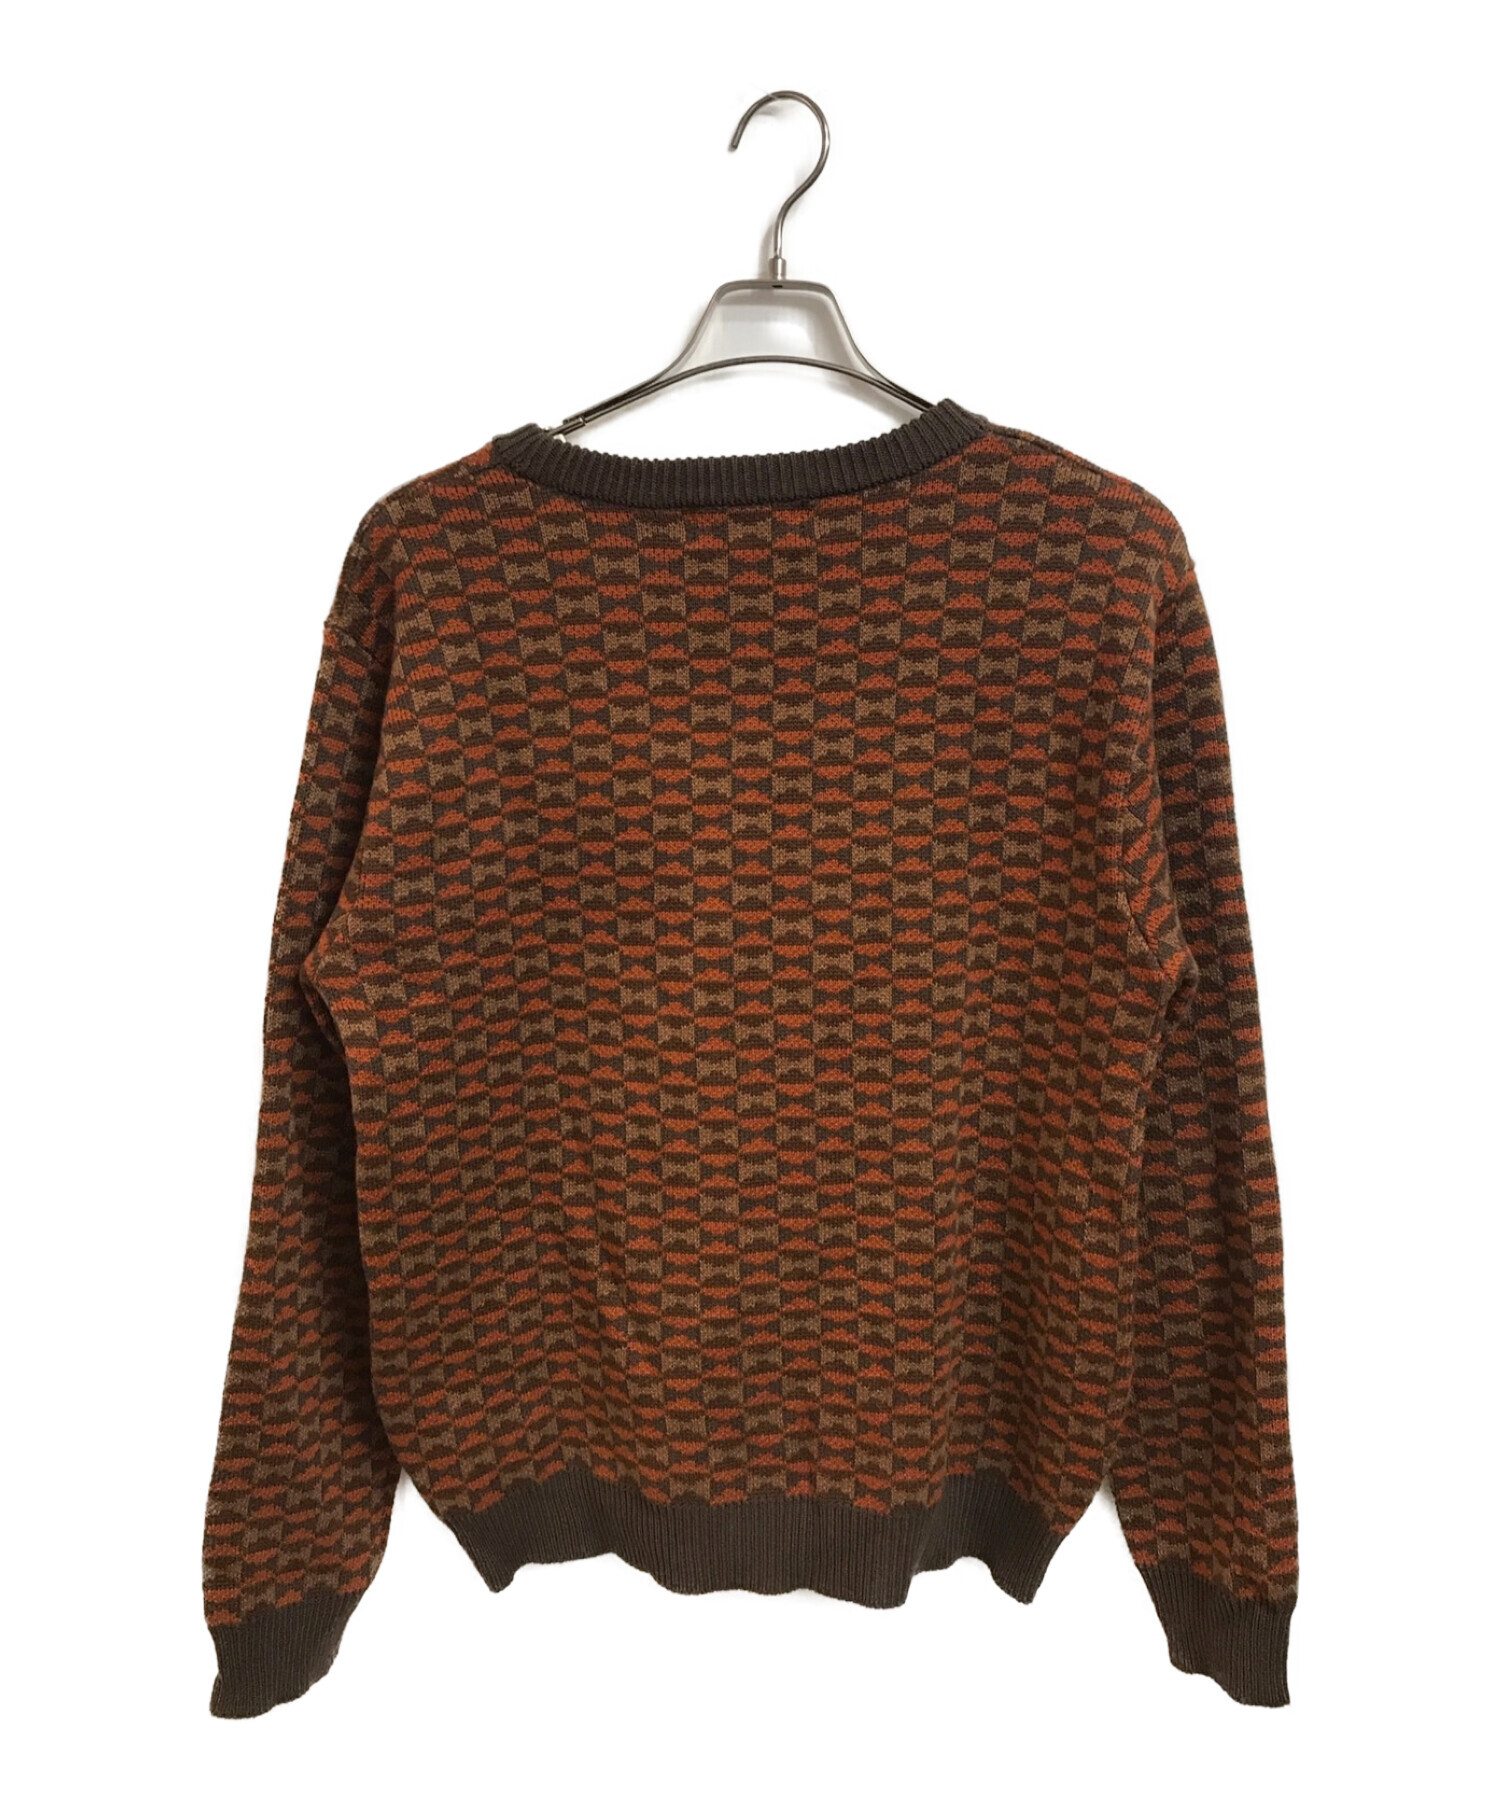 中古・古着通販】BoTT (ボット) Century Sweater ブラウン サイズ:M ...